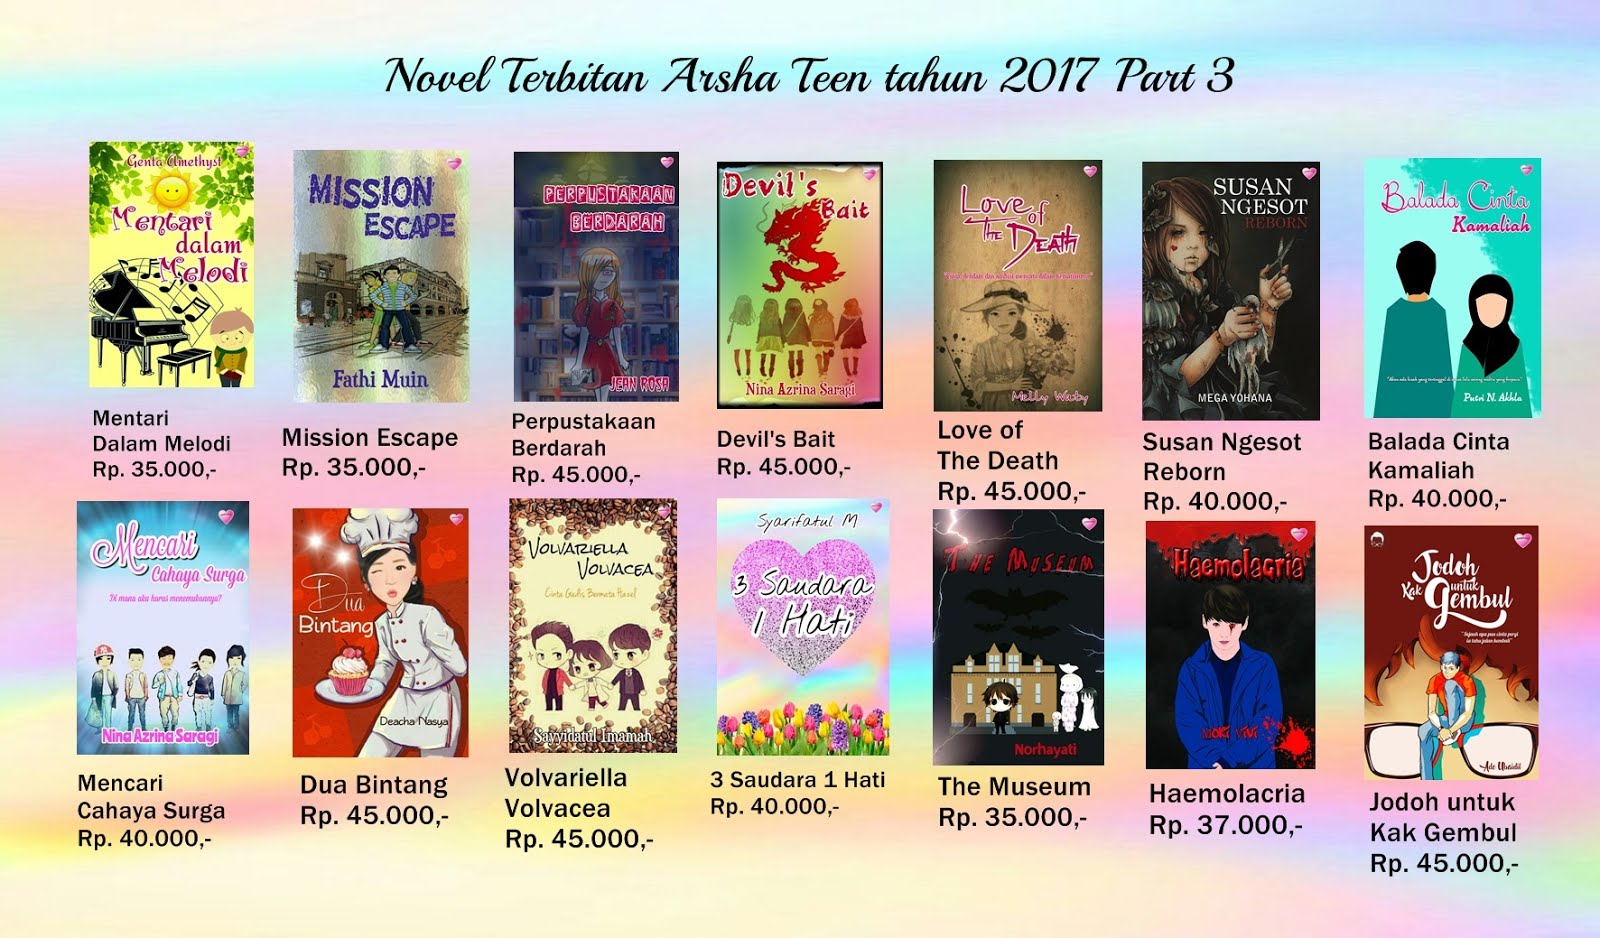 Novel Terbitan Arsha Teen Tahun 2017 Part III